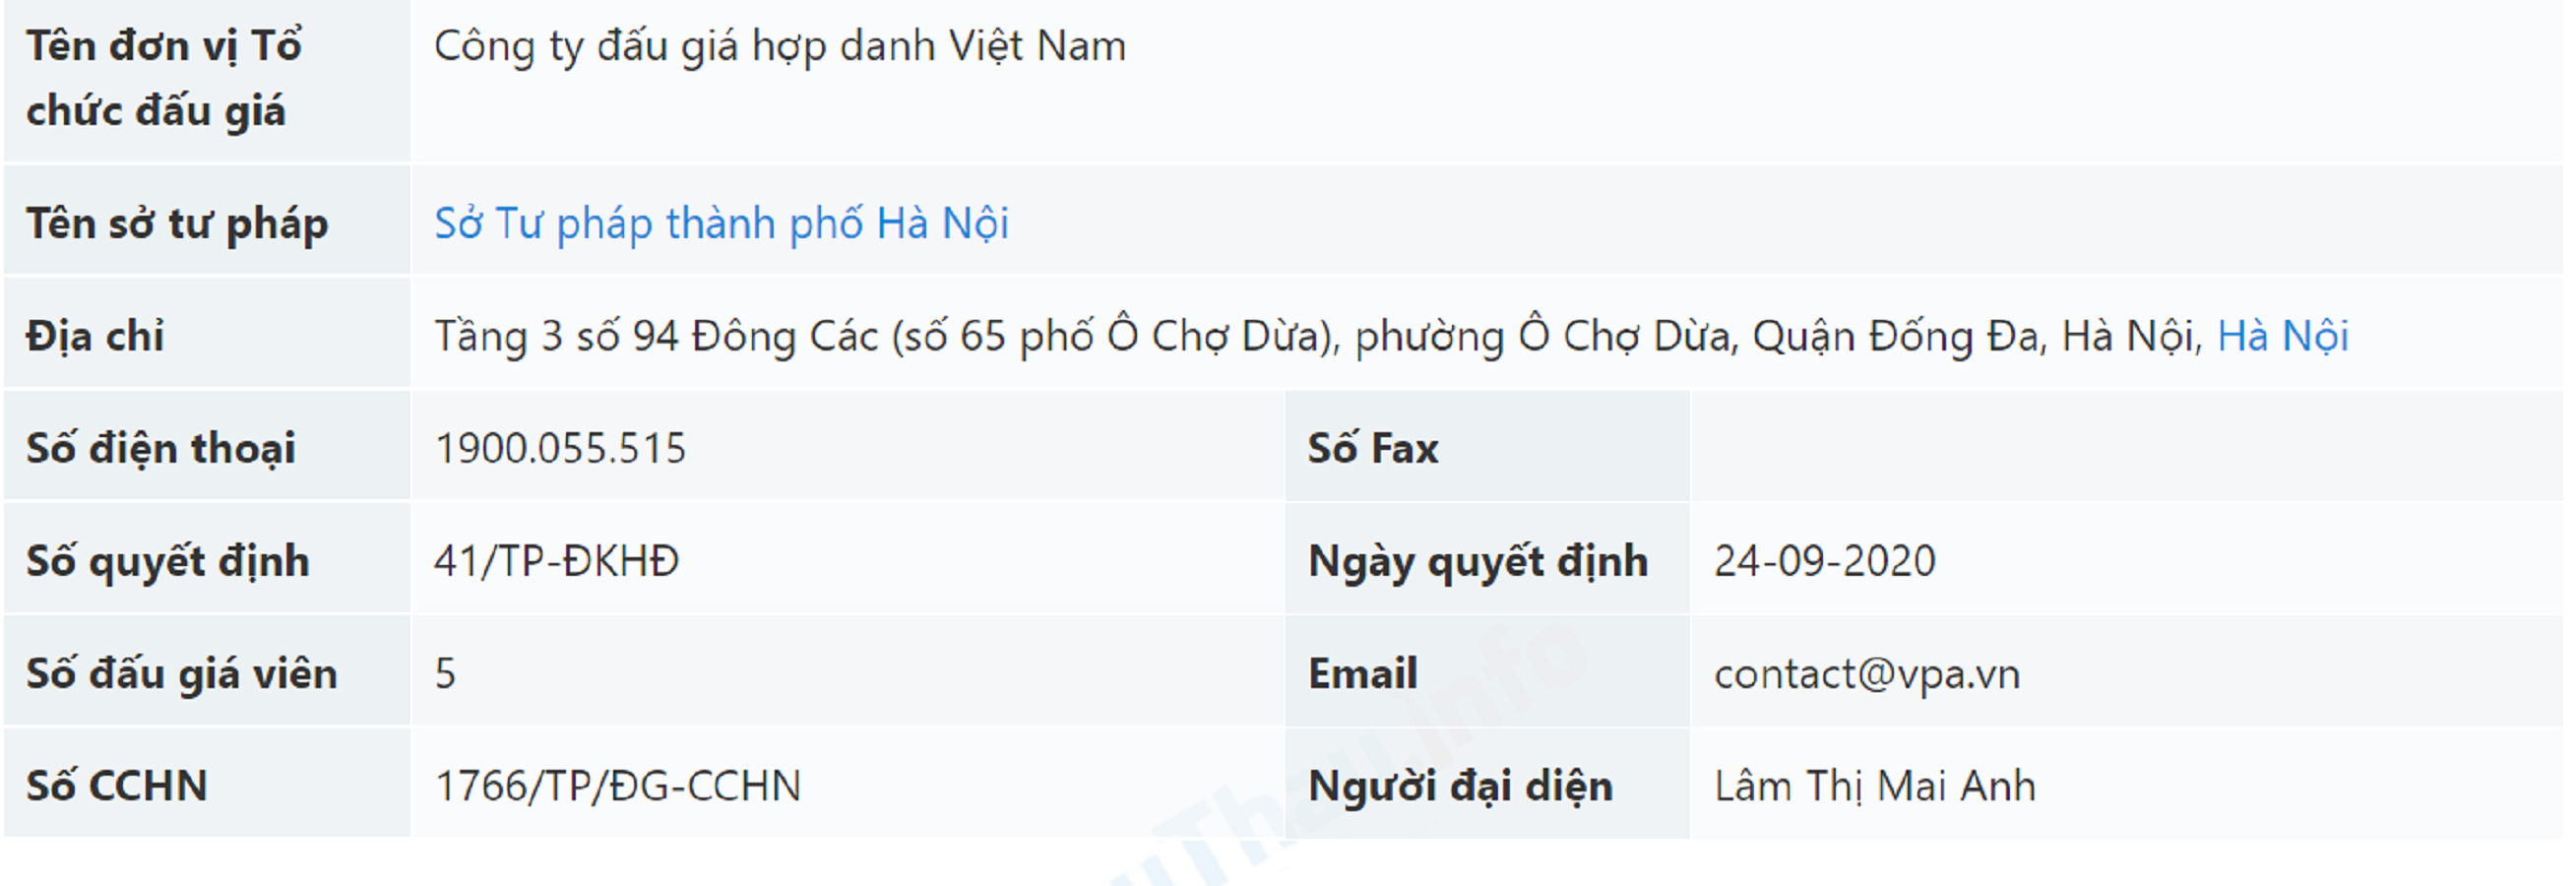 Dữ liệu về Công ty đấu giá hợp danh Việt Nam.